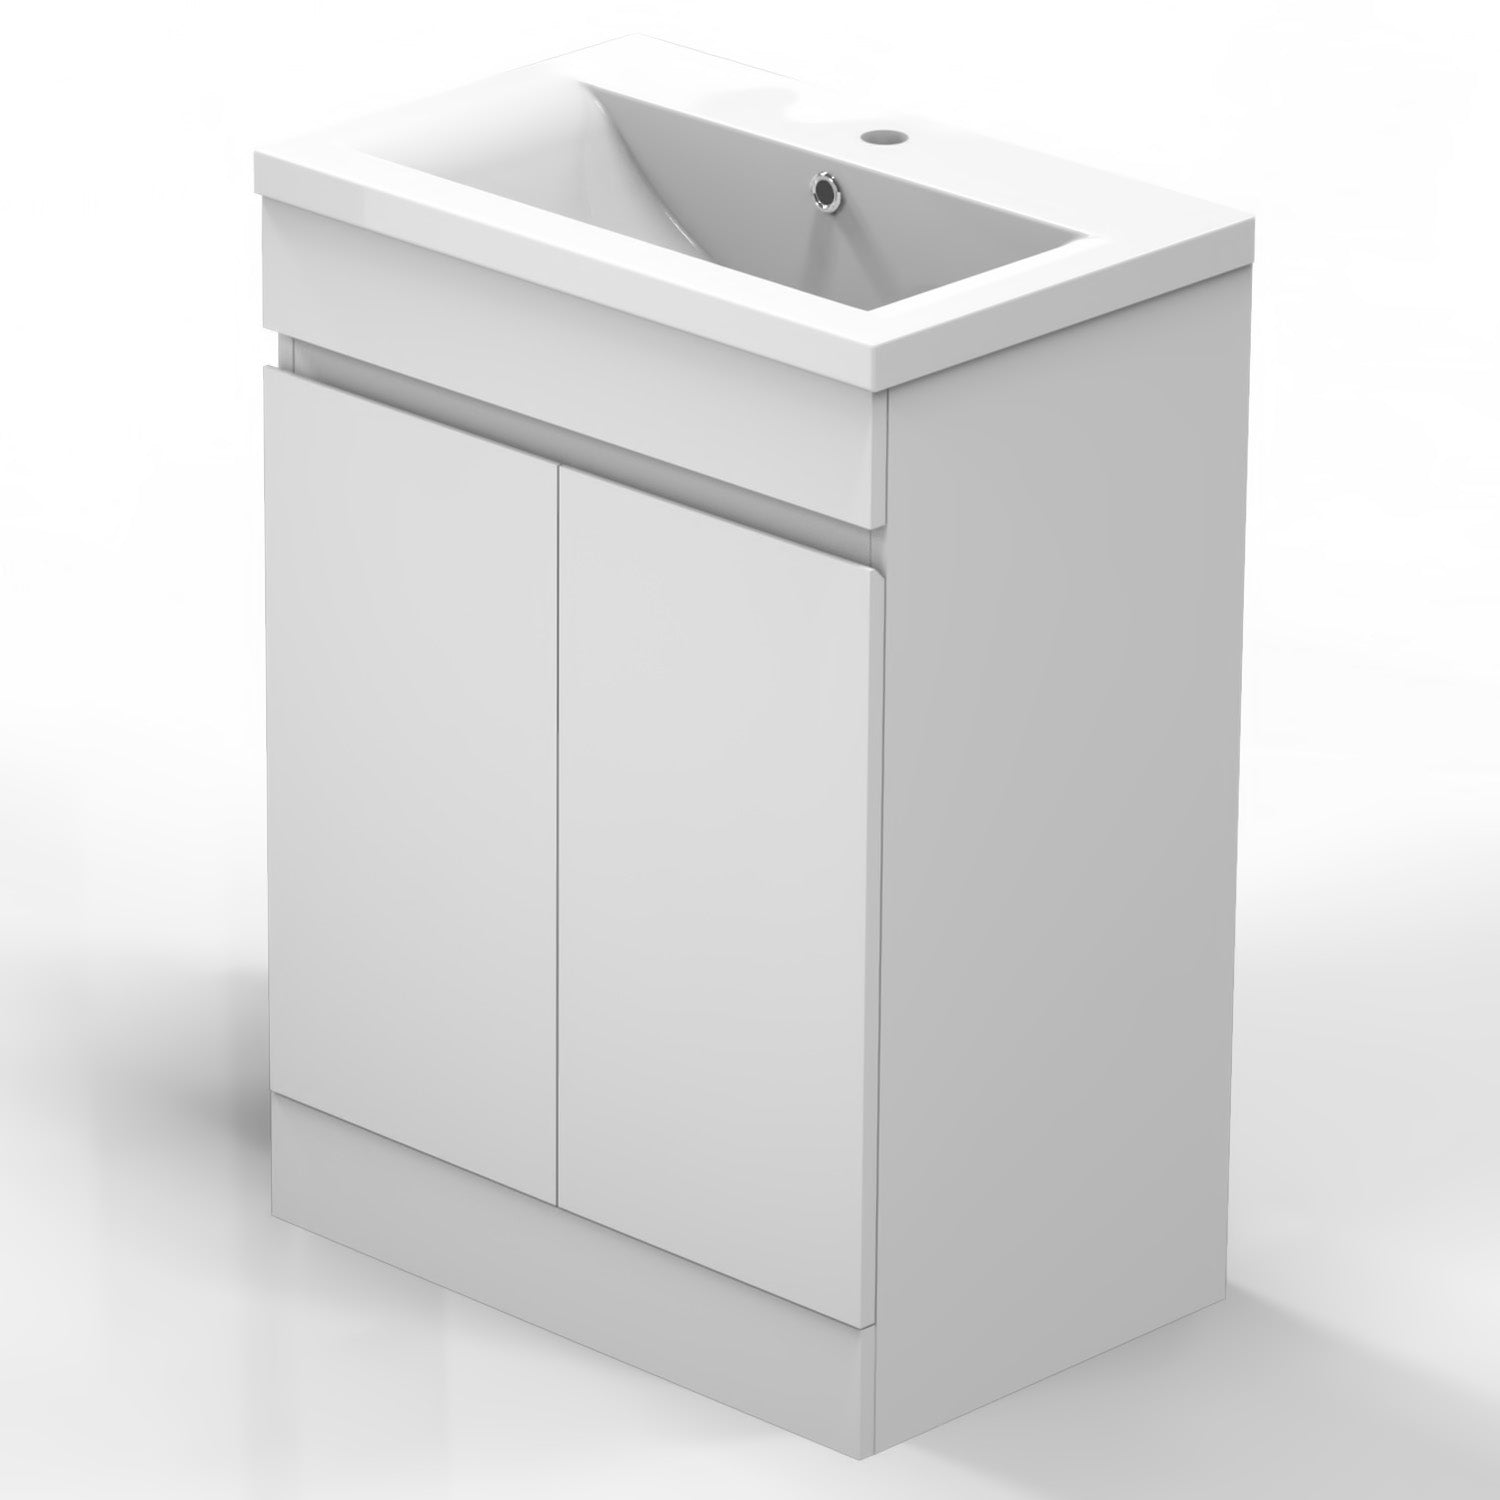 Meuble de salle de bain, Meuble sous vasque sur pieds 2 portes et vasque céramique, Blanc/Anthracite 50cm -Livraison gratuite